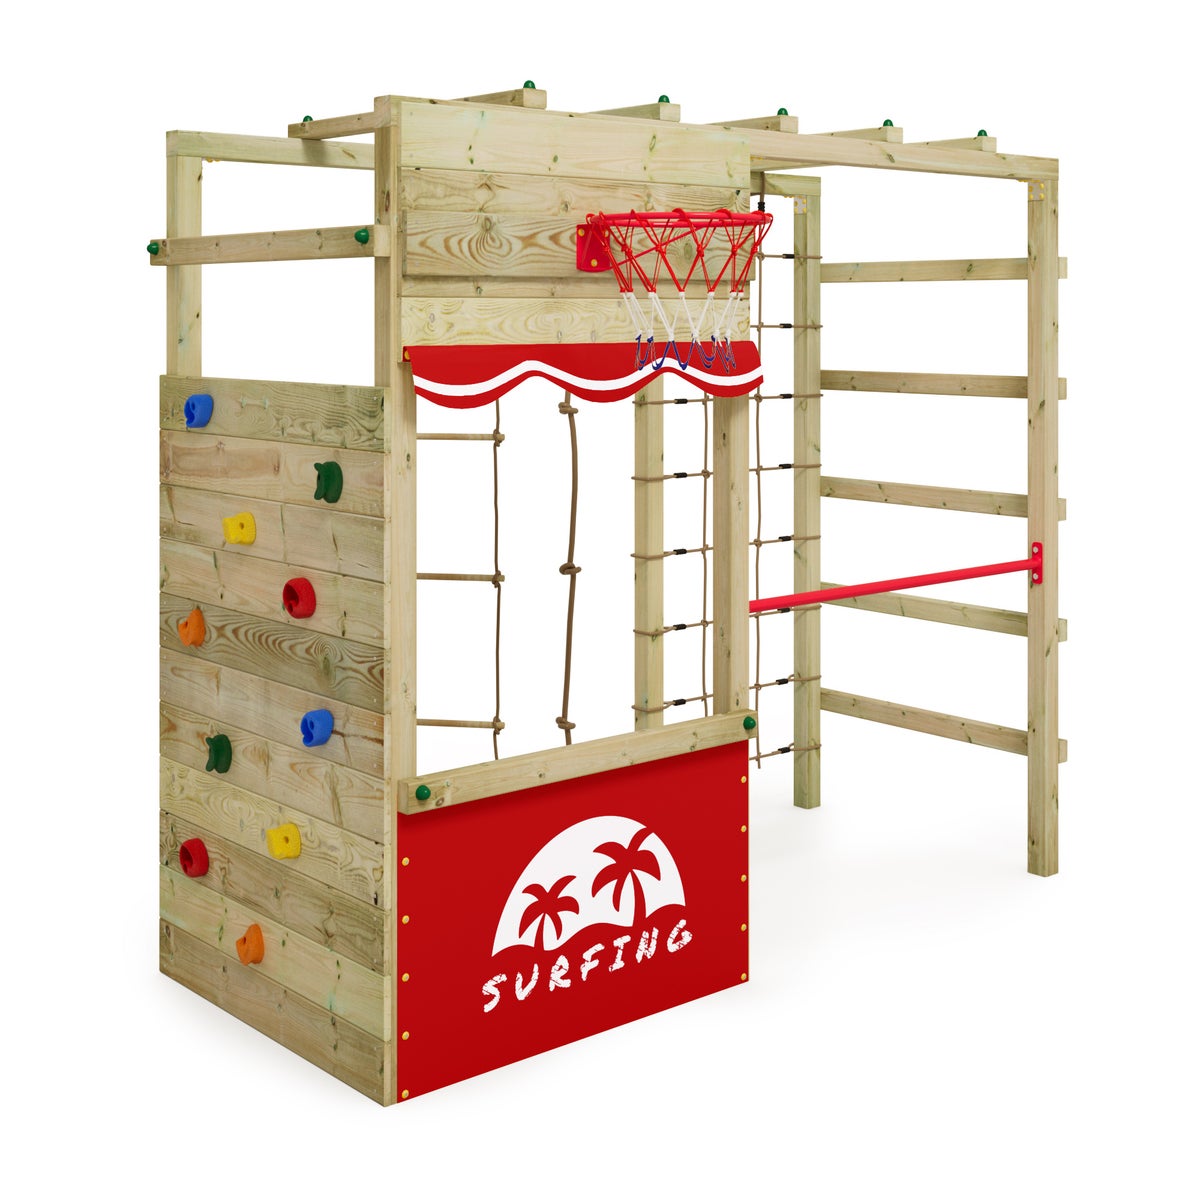 WICKEY Klettergerüst Spielturm Smart Action Gartenspielgerät mit Kletterwand und Spiel-Zubehör - rot